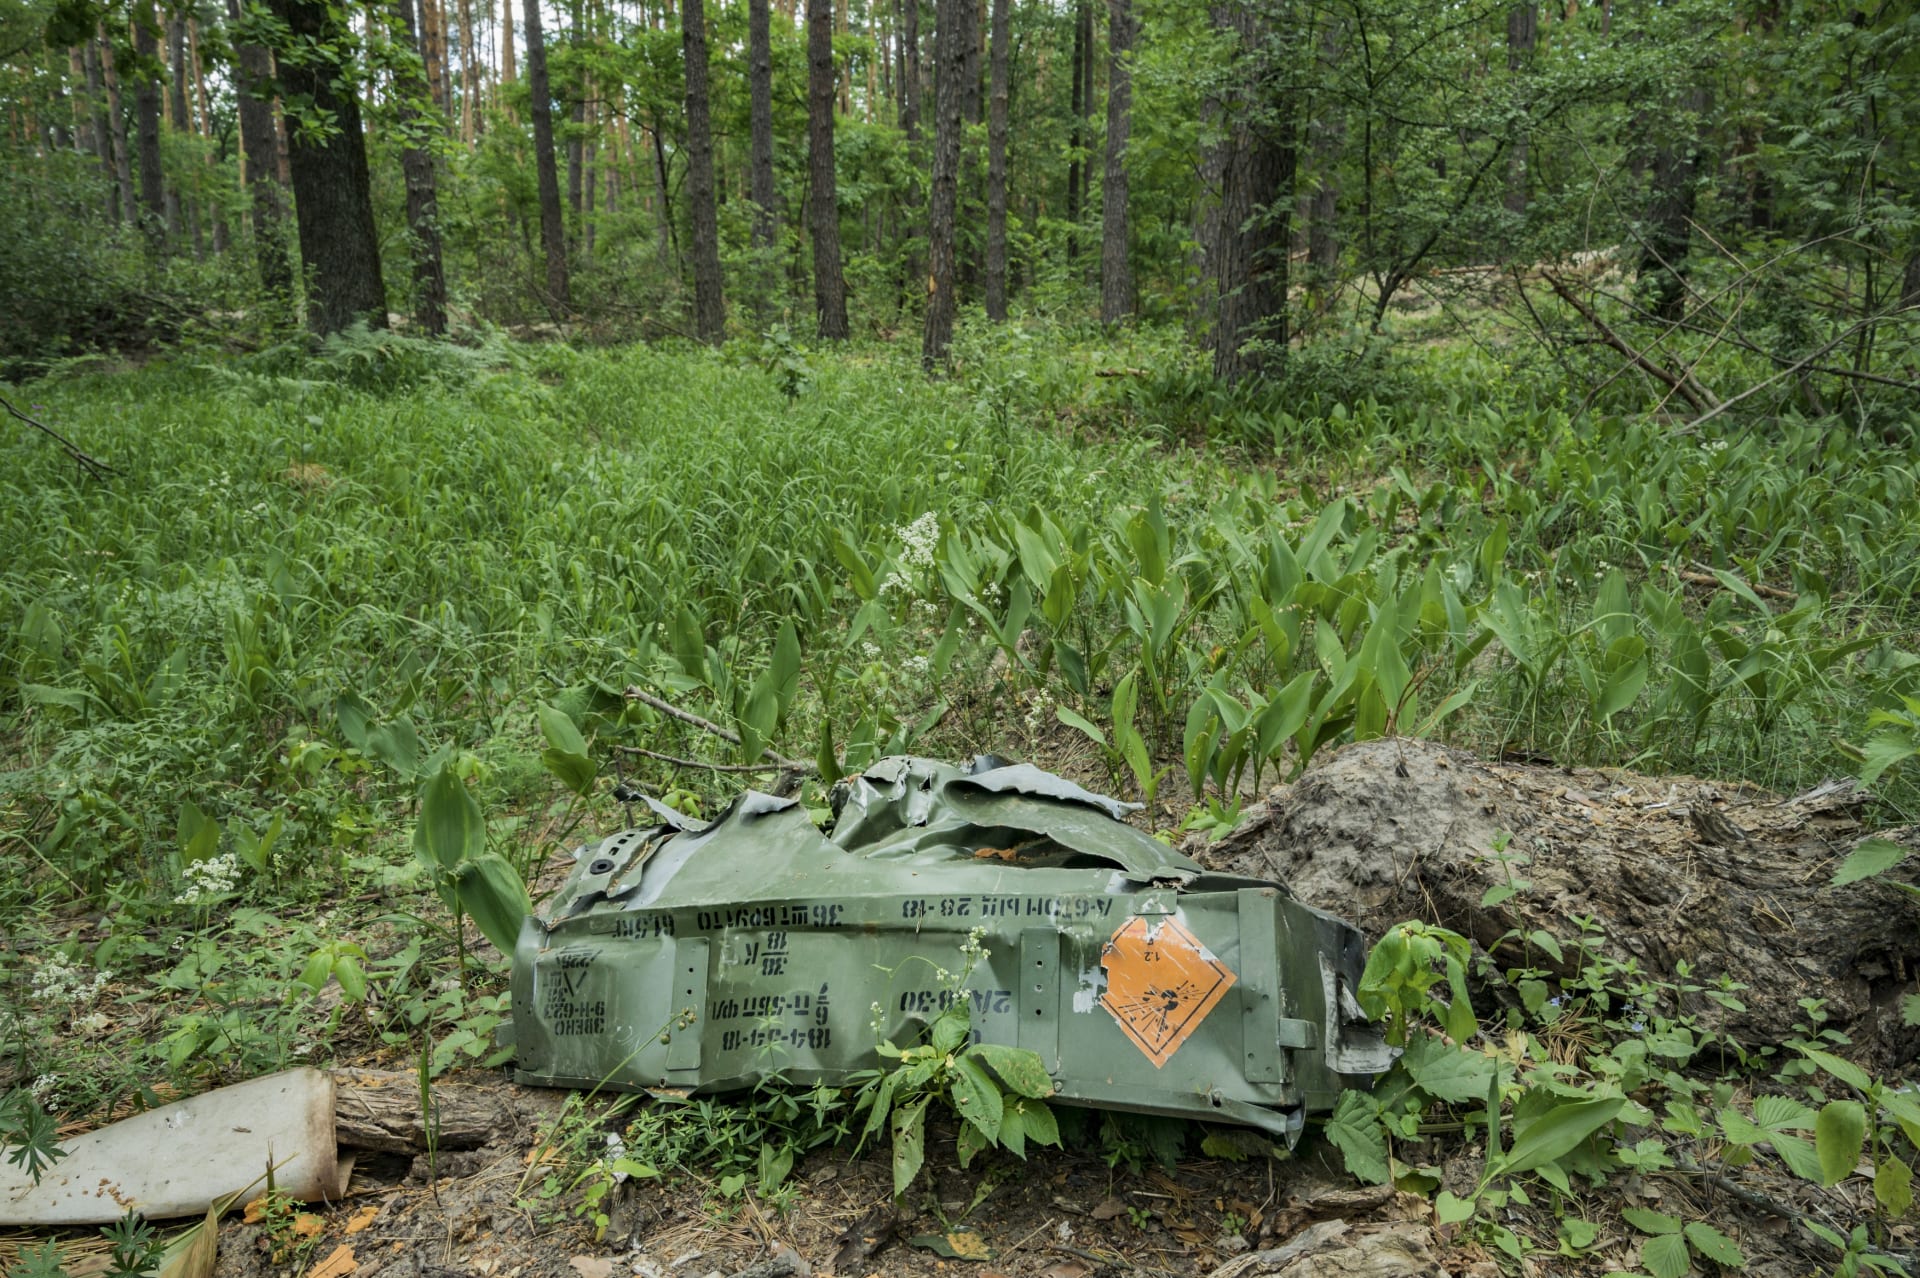 Zbytky krabice s výbušninami, zanechané ruskou okupační armádou v ukrajinském lese (ilustrační foto)